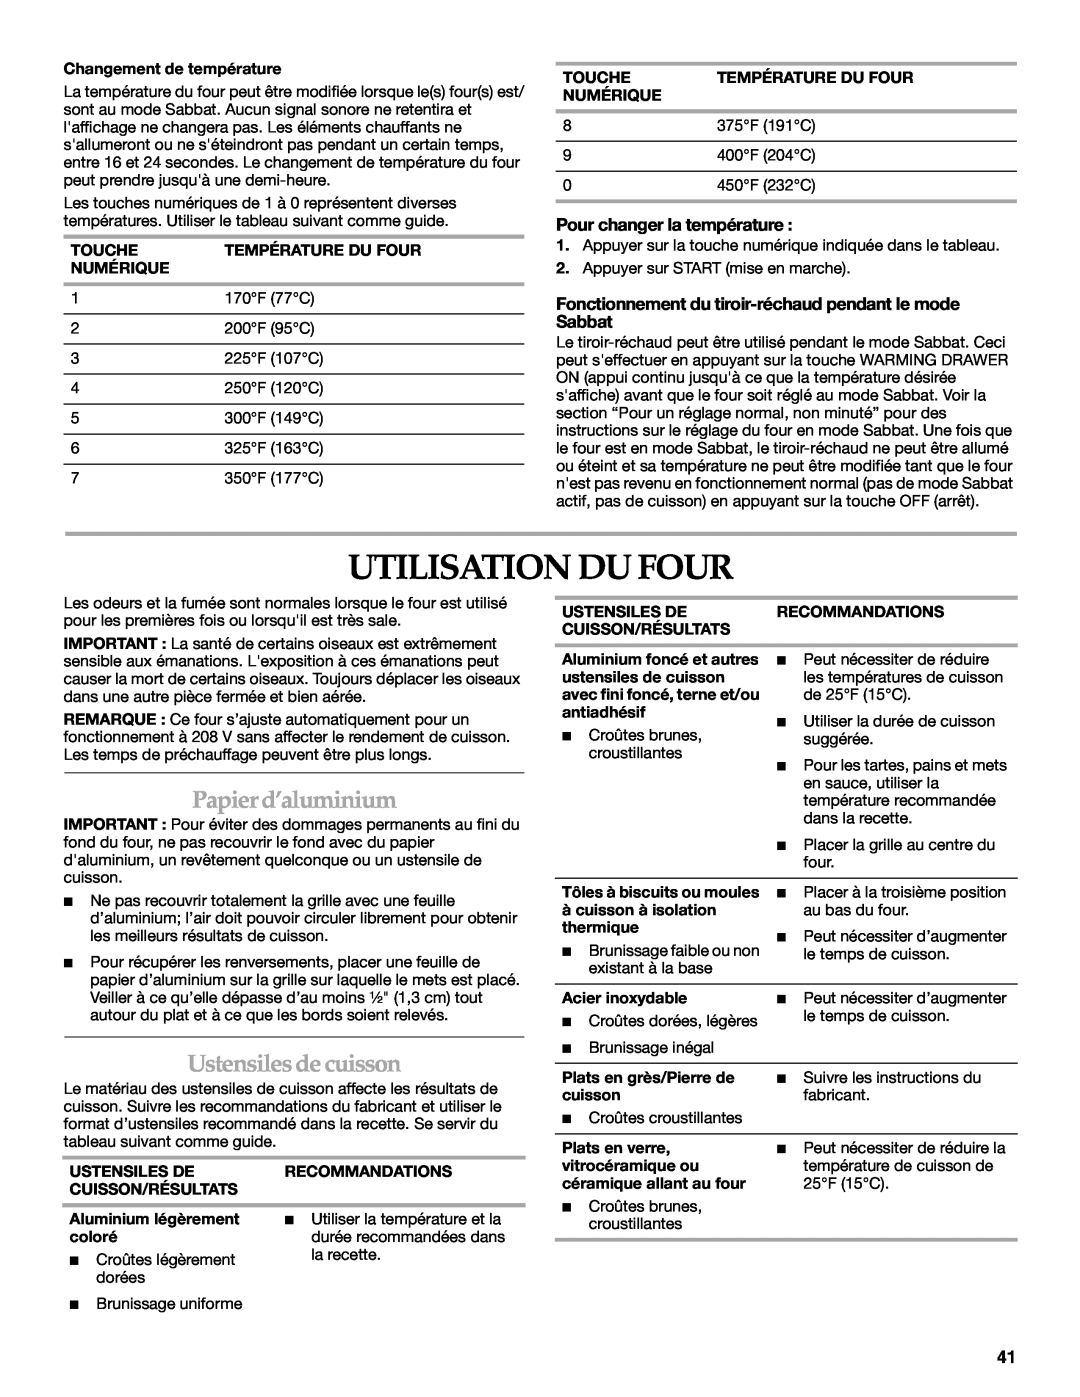 KitchenAid KDRS807 manual Utilisation Du Four, Papier d’aluminium, Ustensiles de cuisson, Pour changer la température 